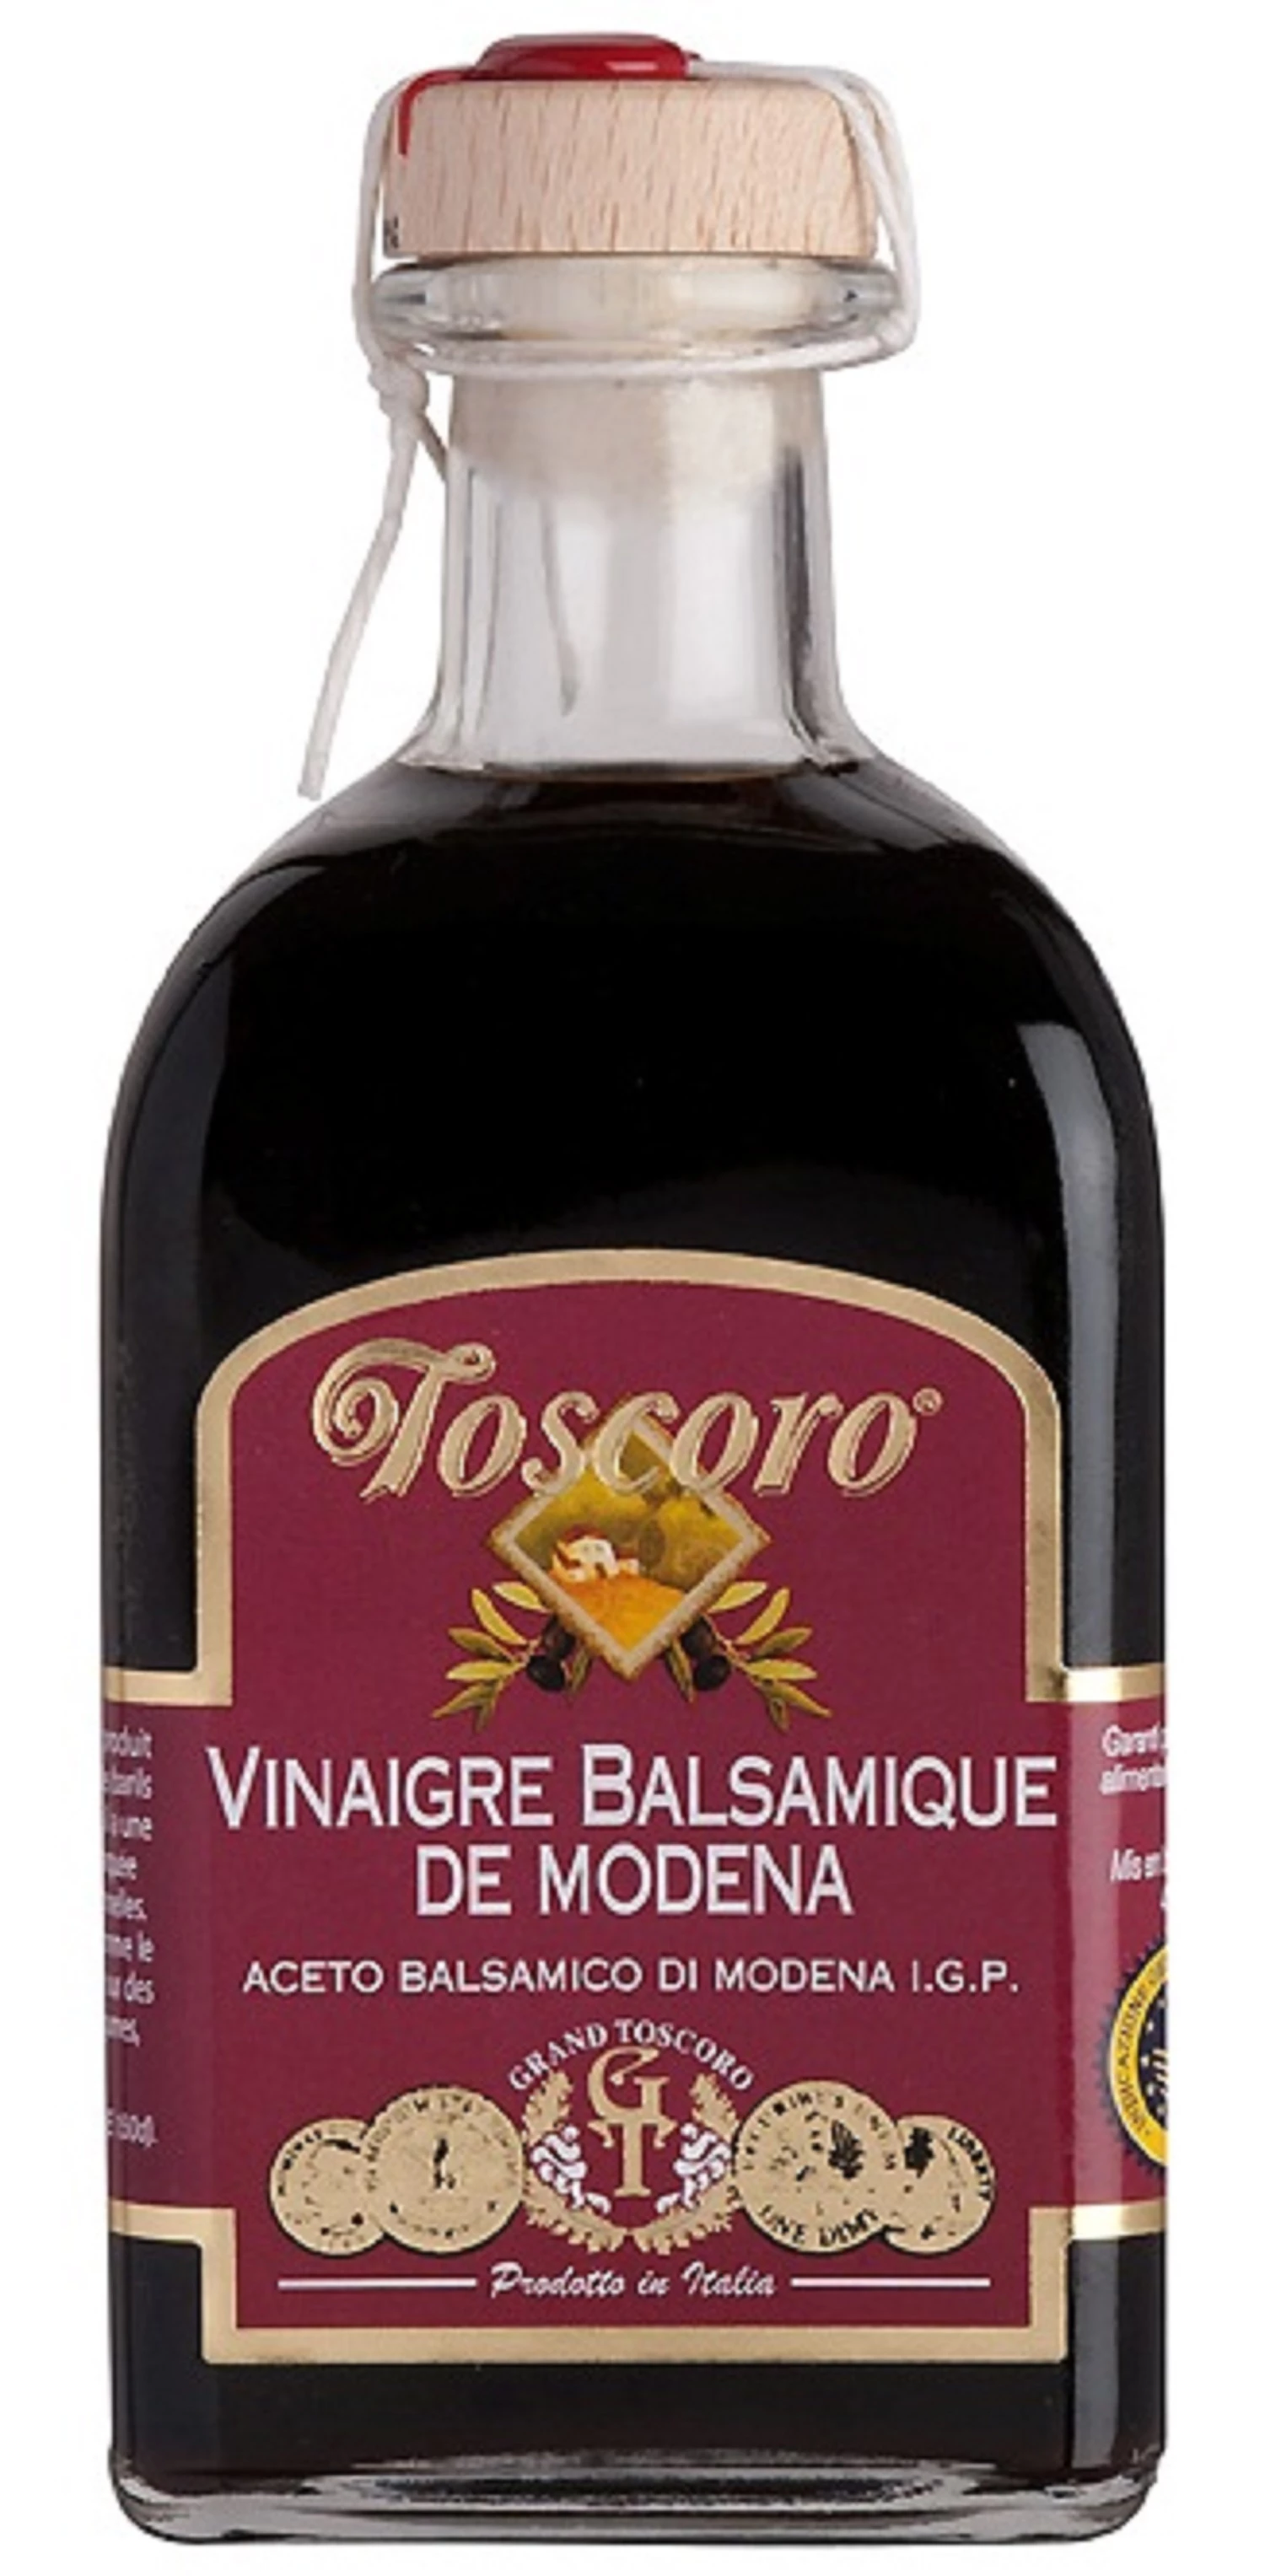 Vinaigre balsamique de modena - TOSCORO